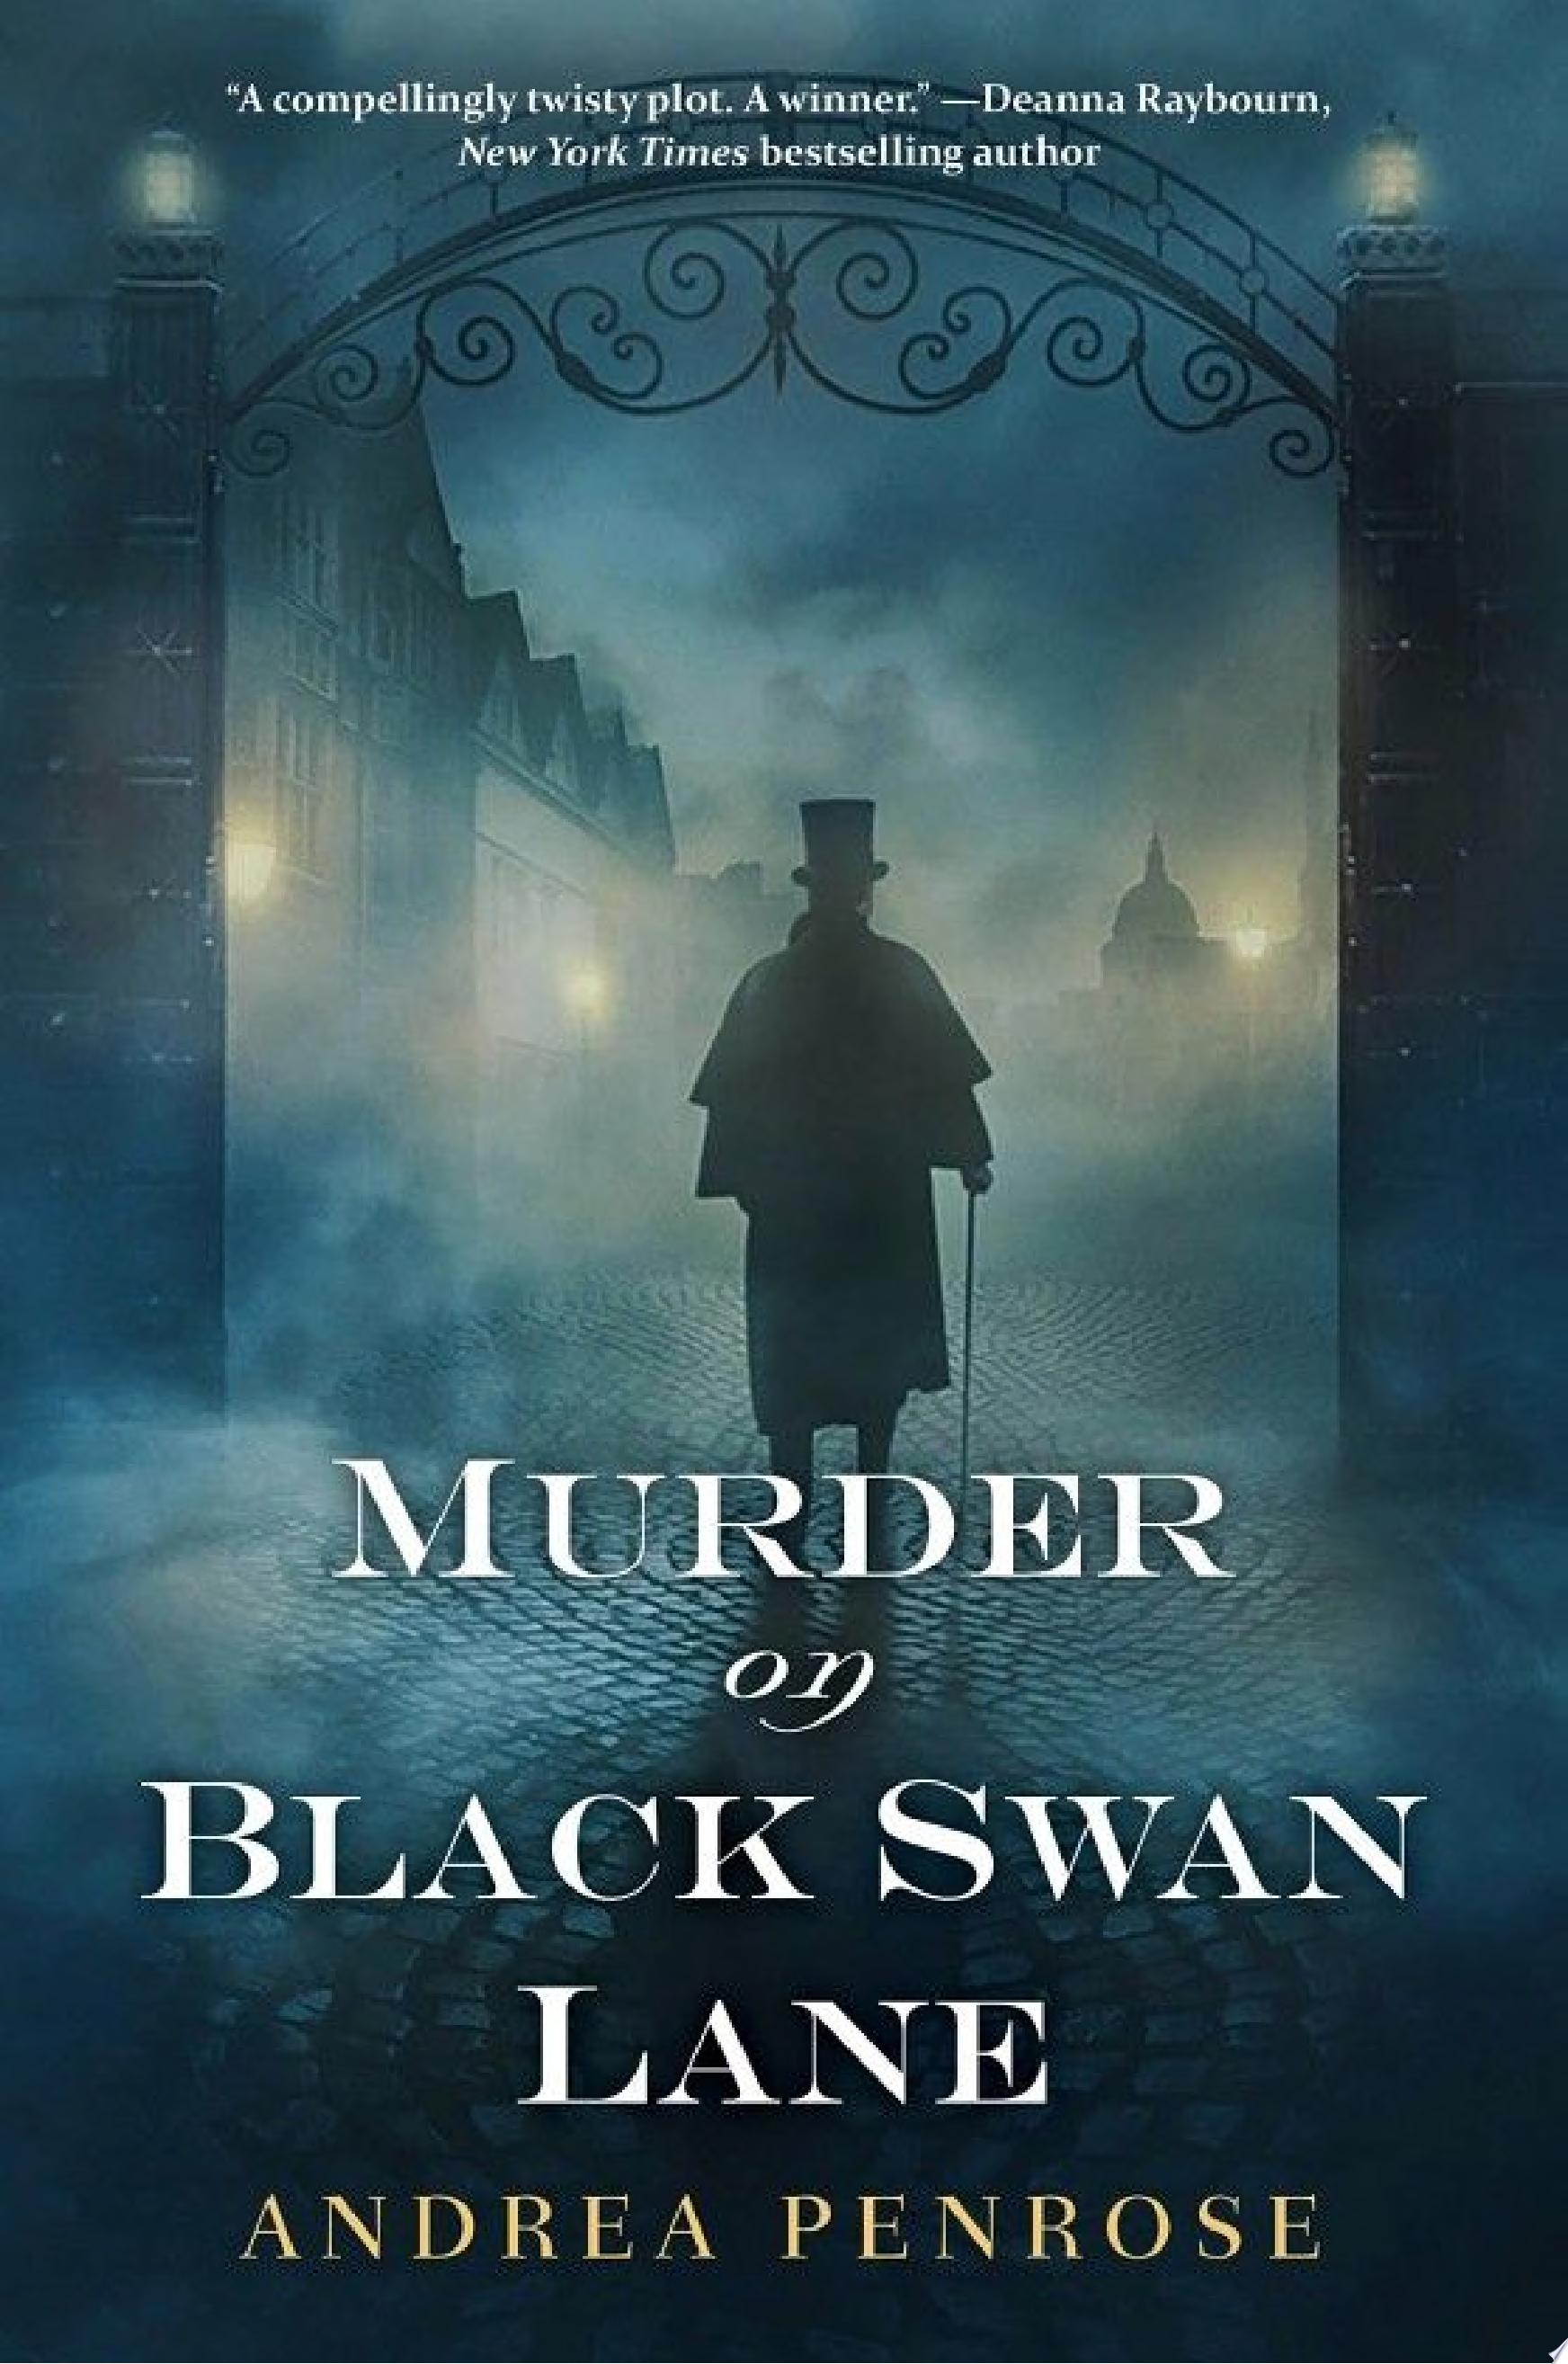 Image for "Murder on Black Swan Lane"